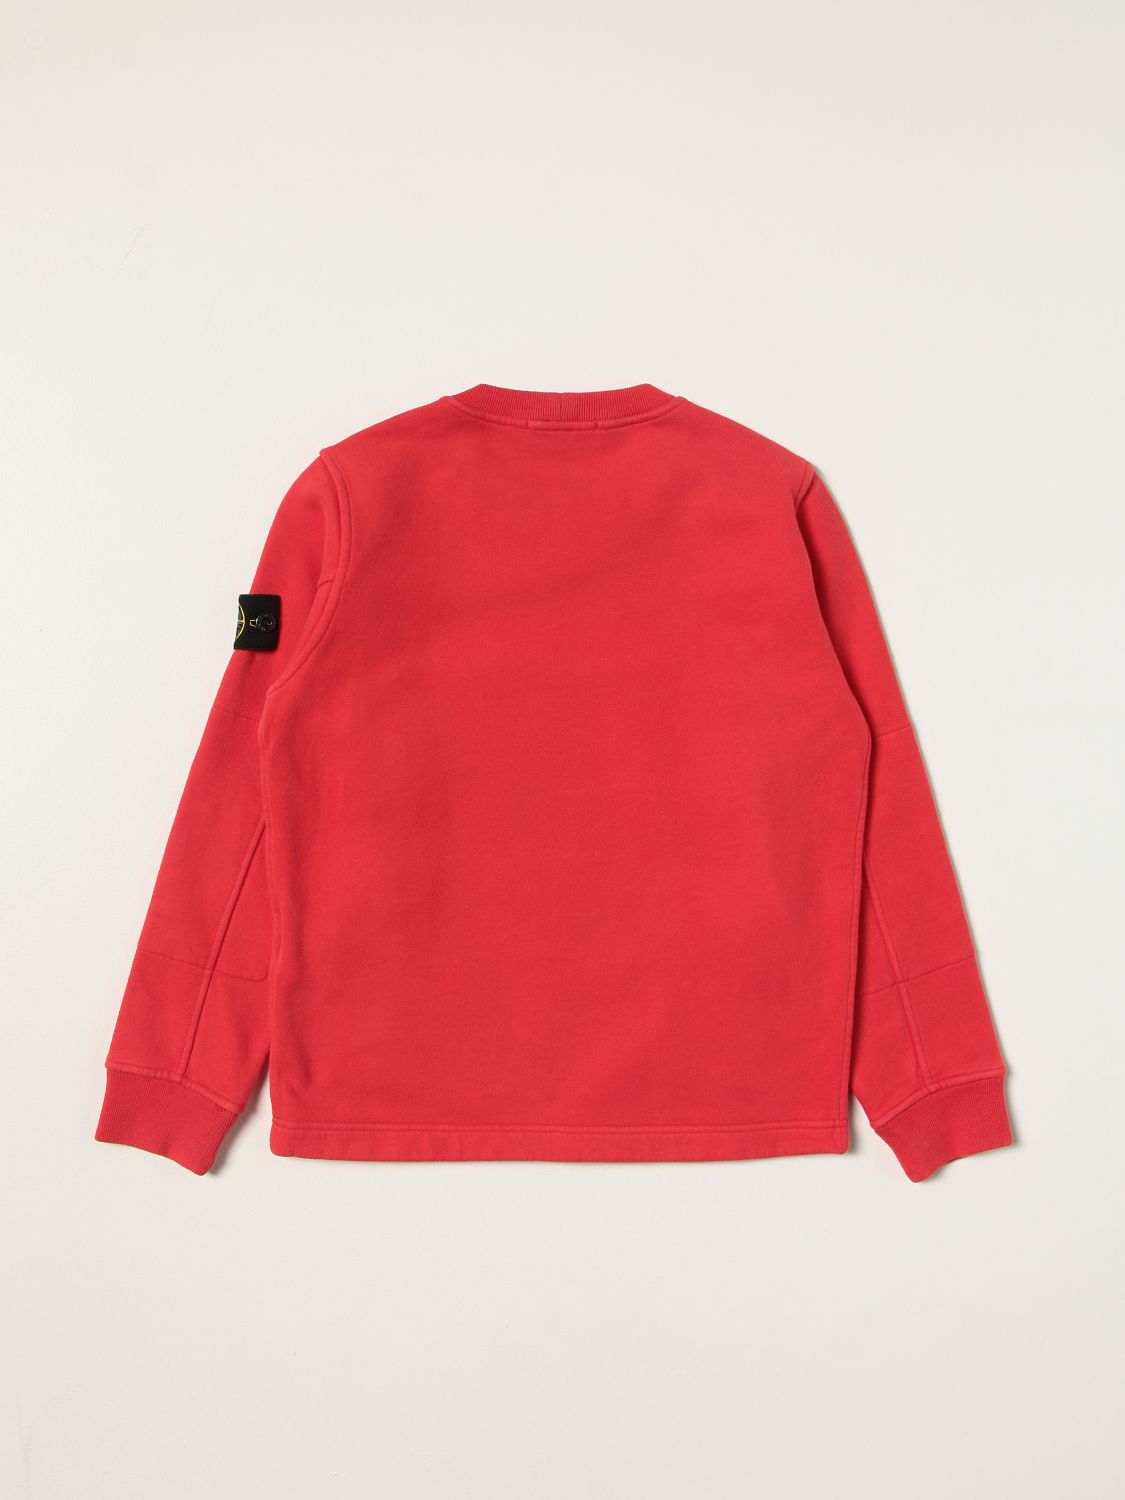 aardolie geluk scheuren STONE ISLAND JUNIOR: sweater for boys - Red | Stone Island Junior sweater  60240 online on GIGLIO.COM